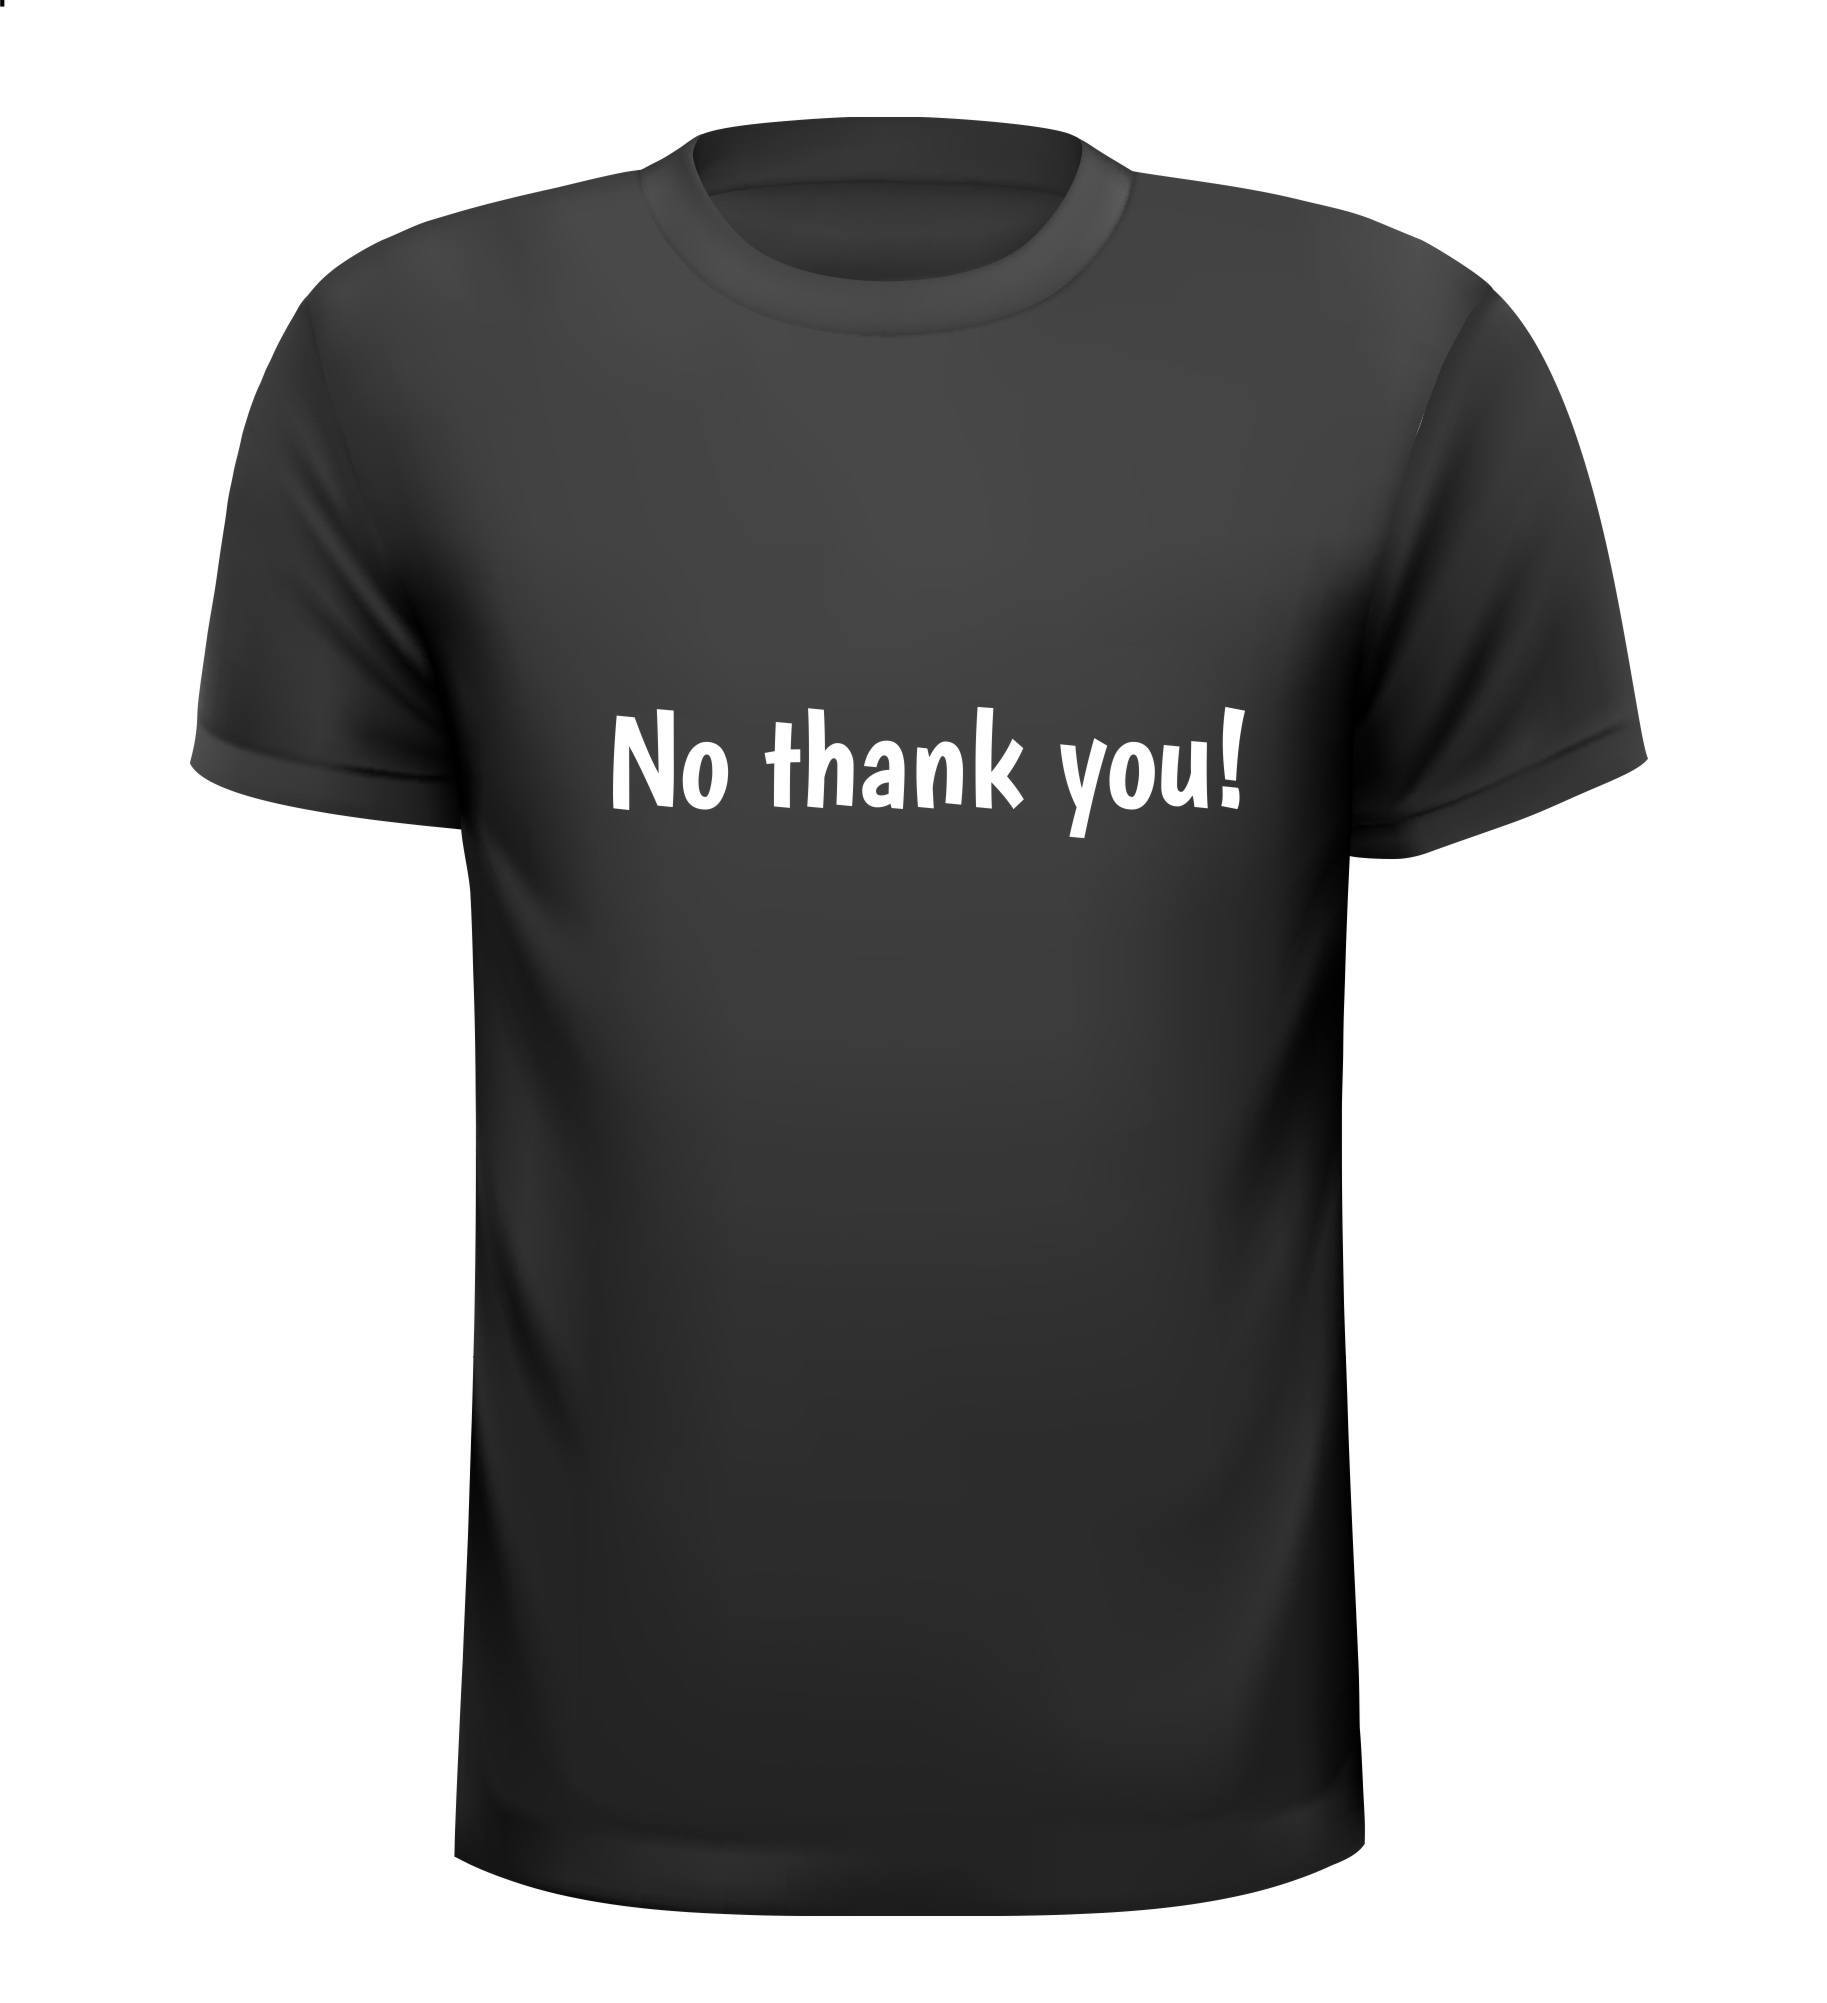 No thank you! T-shirt nee bedankt!